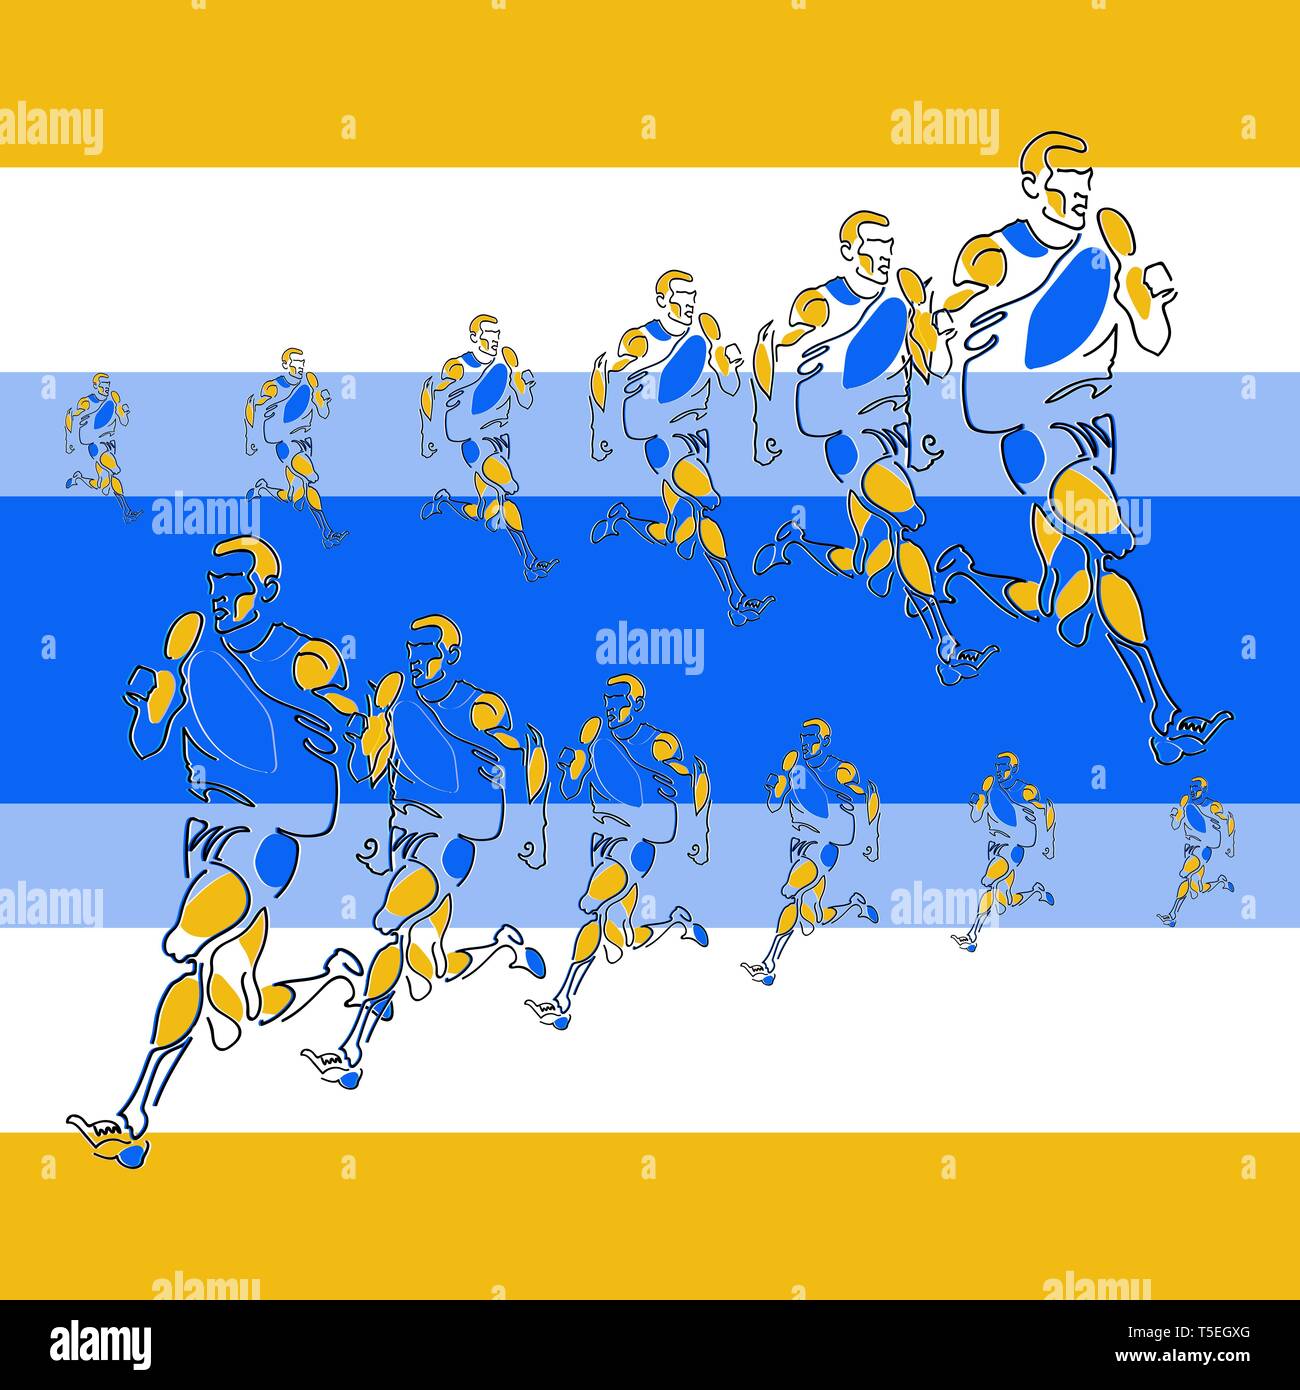 Motif linéaire vectorielle de figures stylisées d'athlètes à l'aide de l'étape et à l'échelle. Créé effet de perspective. Couleurs contrastées et saturées sont appliqués Illustration de Vecteur